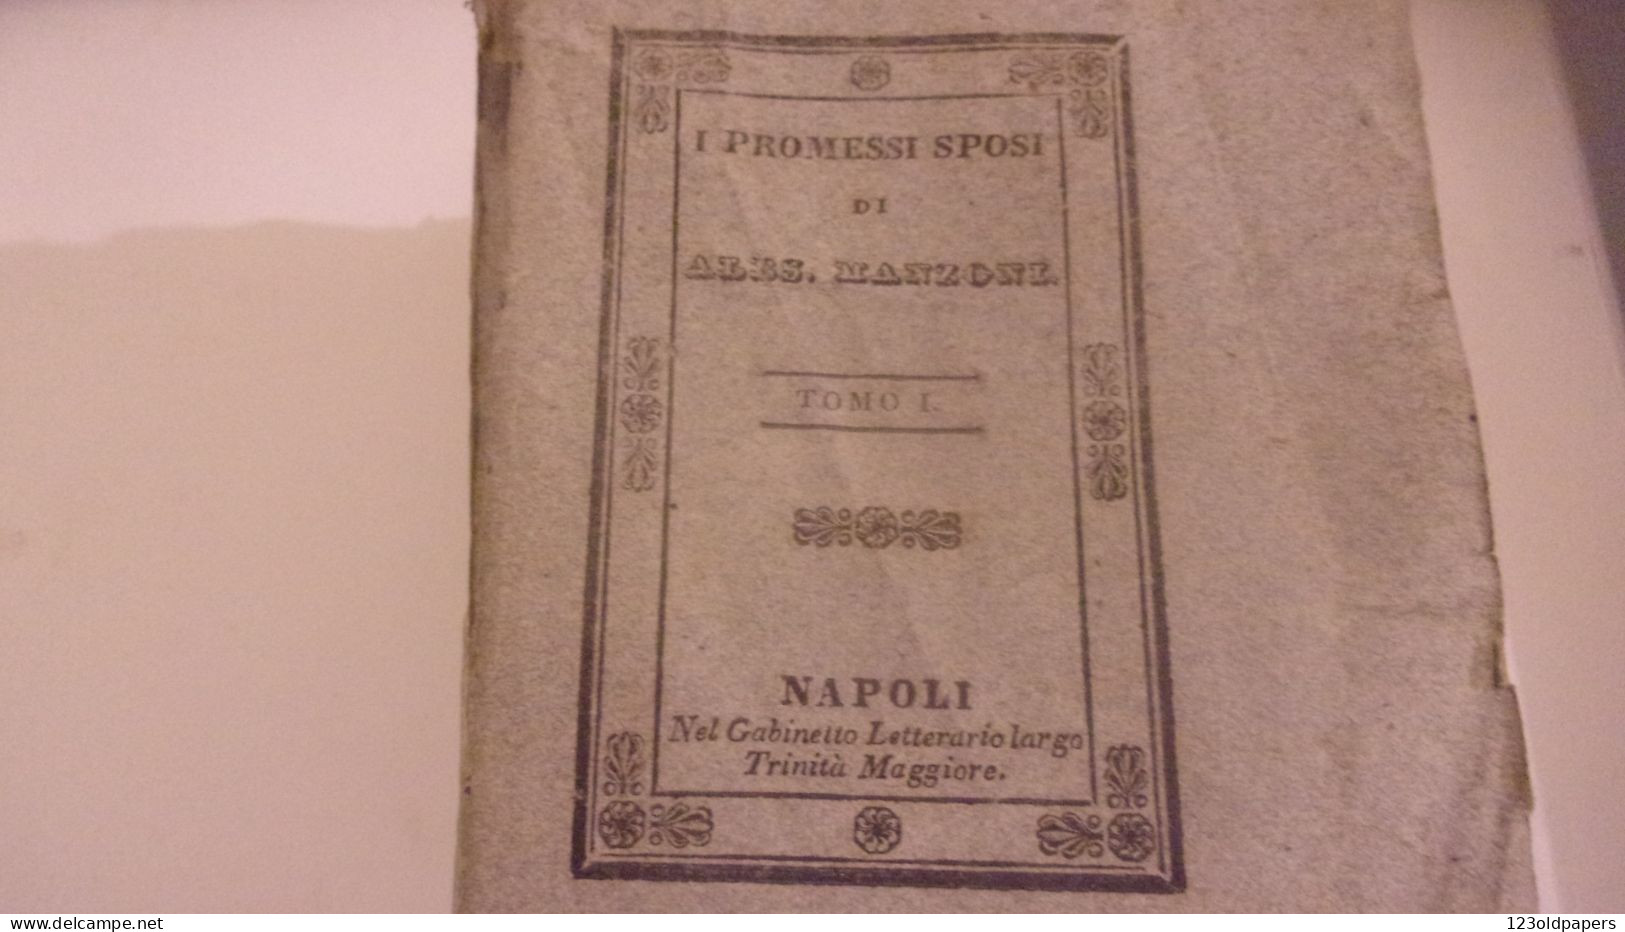 1836 6 VOL COMPLET I PROMESSI SPOSI DI ALES MANZONI  NAPOLI GABINETTO LETTERARIO - Libri Antichi